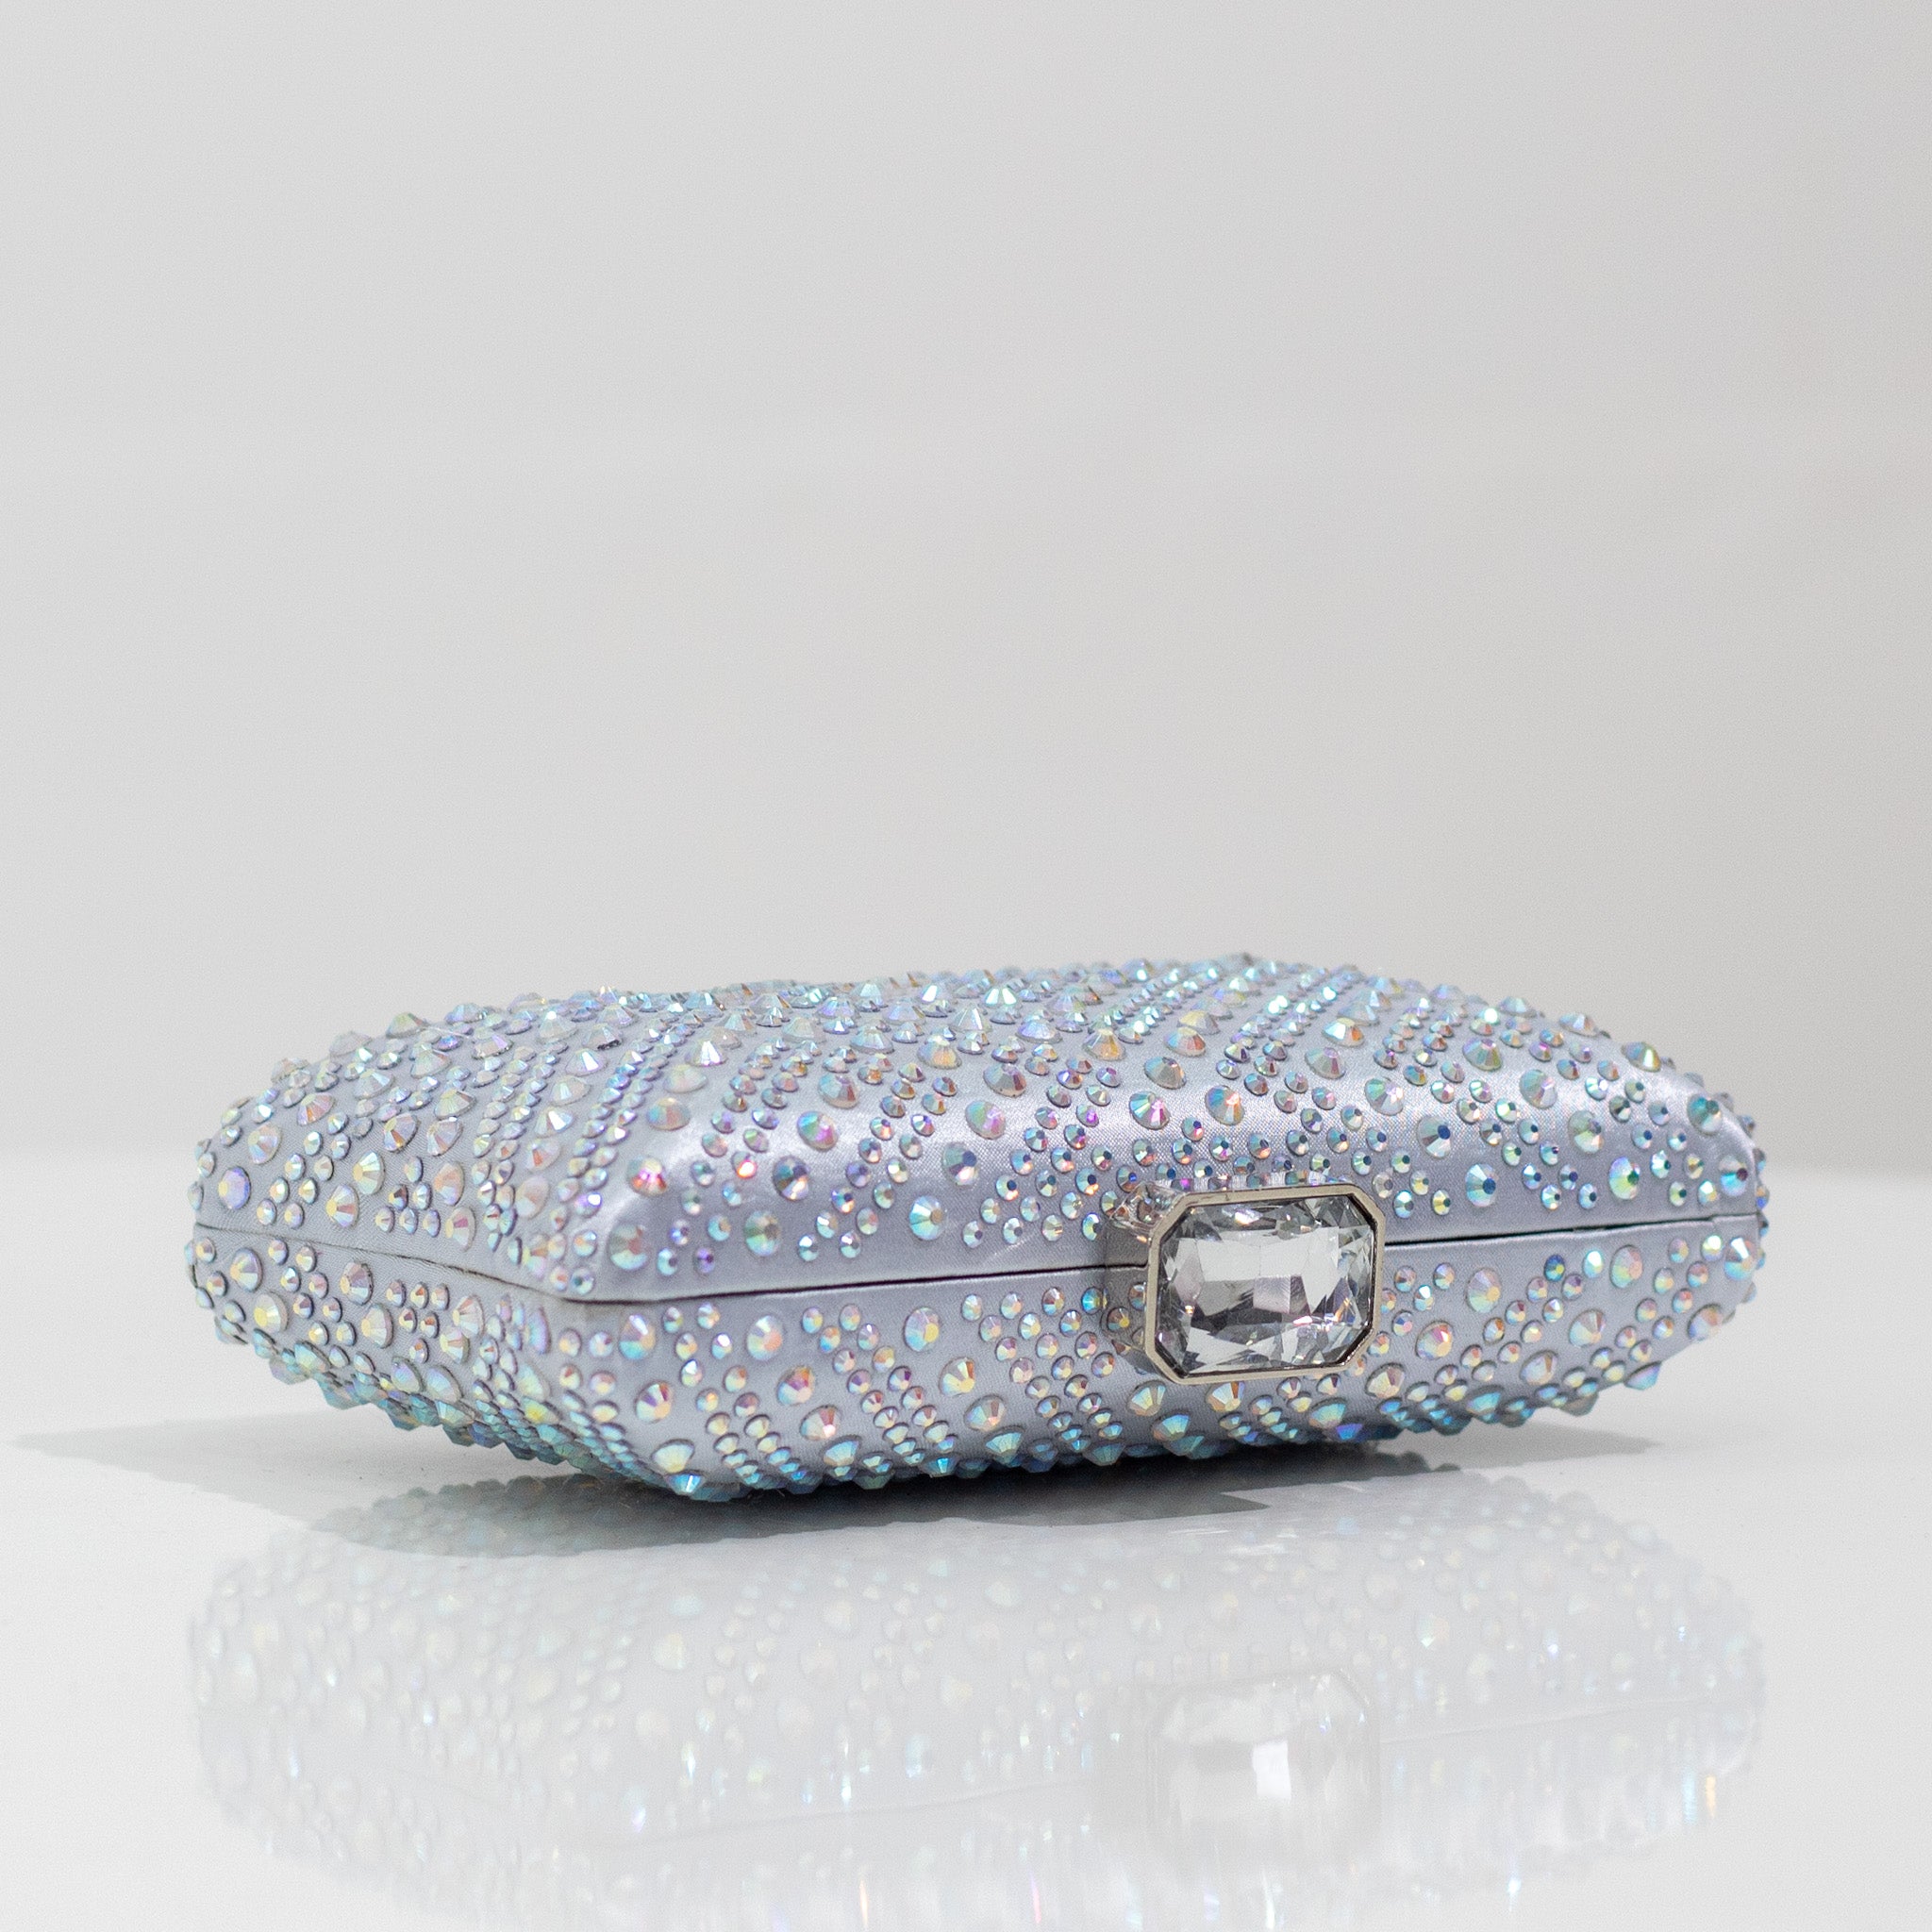 Xayah diamante designs clasp clutch bag silver